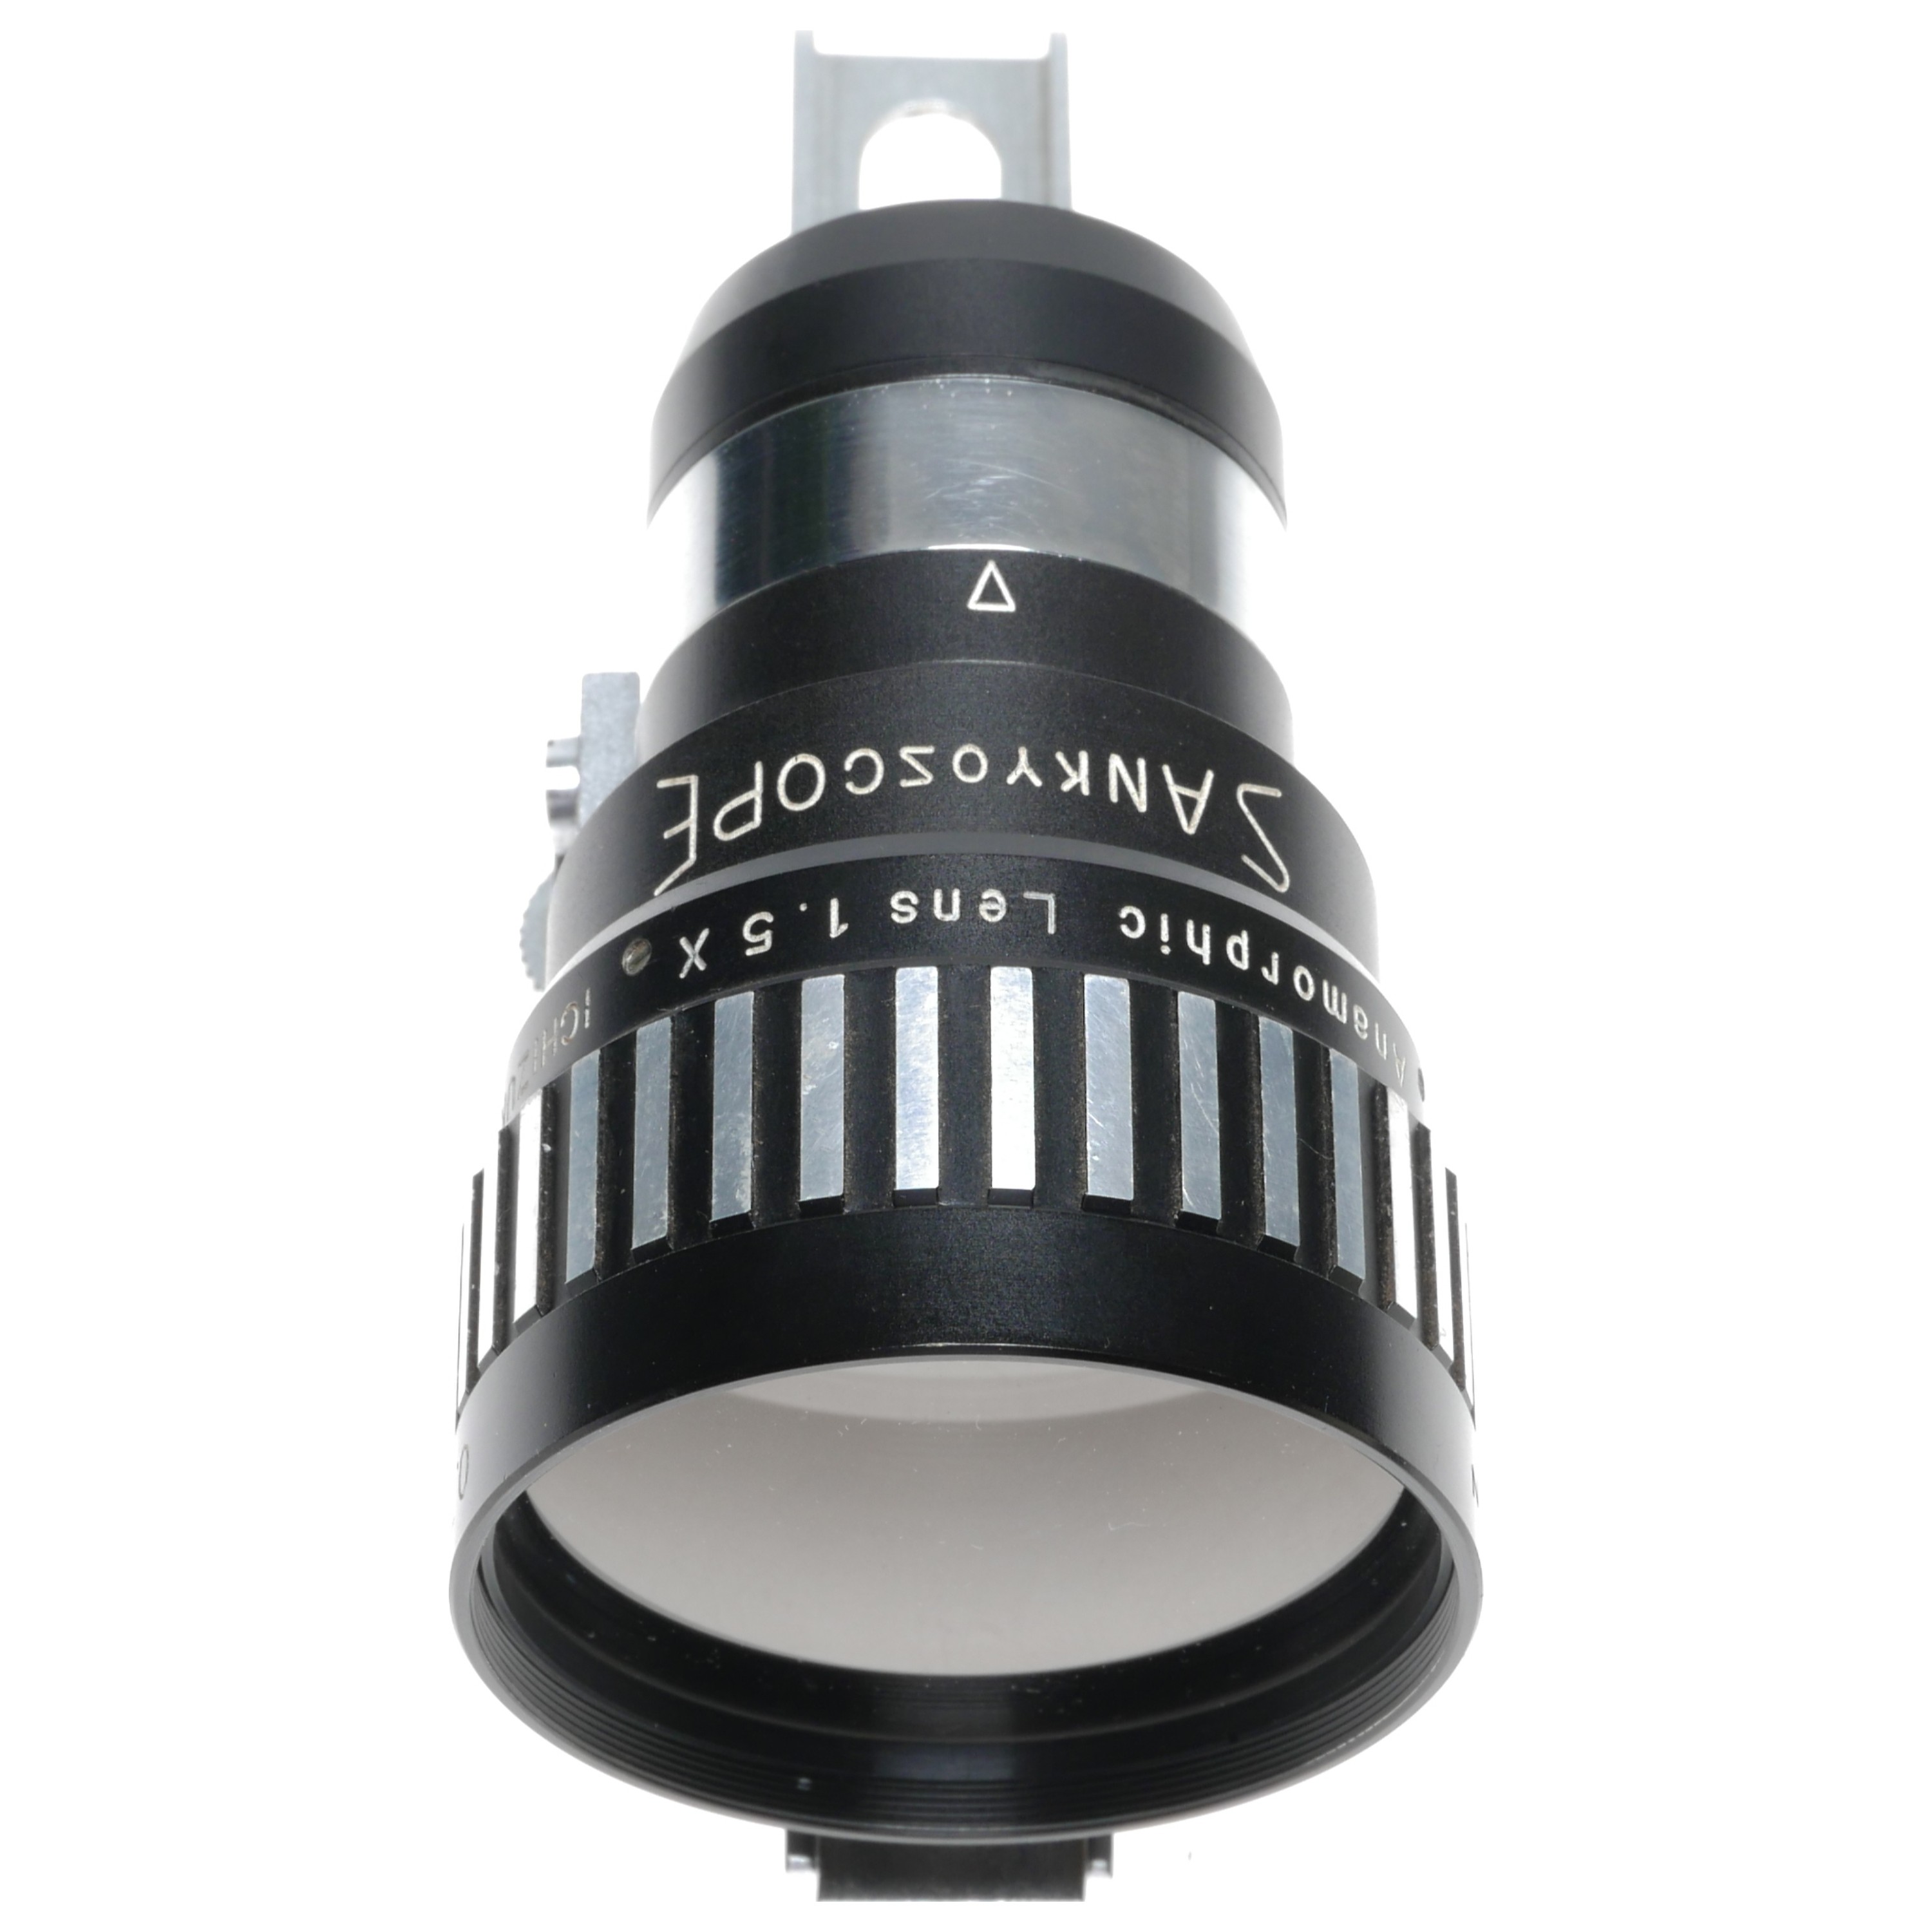 Sankyoscope 8mm Movie Anamorphic Lens 1.5X Ichizuka Opt. 0.7-1m